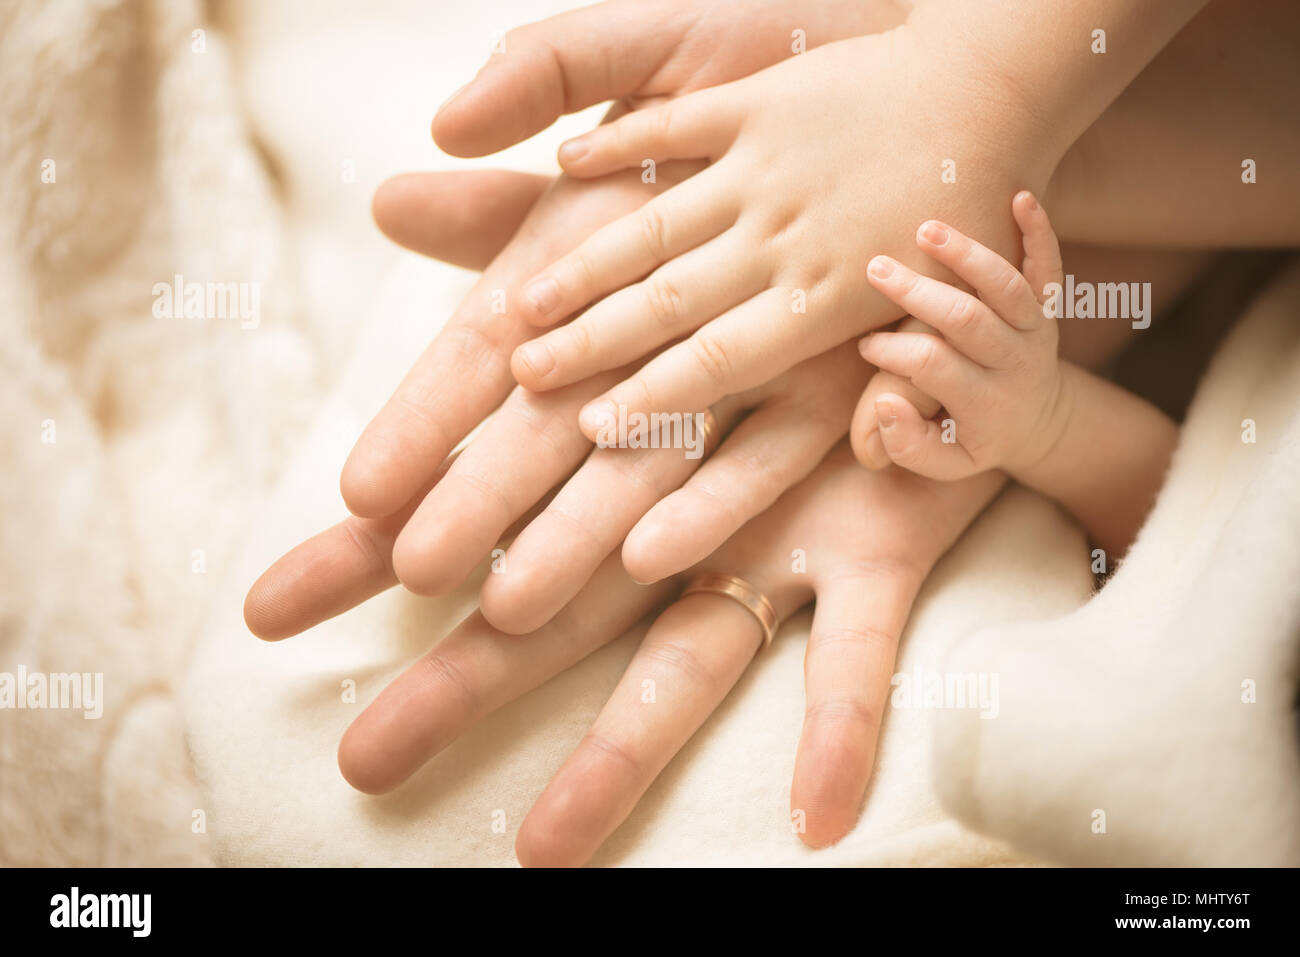 Le nouveau-né de la main. Libre de parents bébé main dans la main. La famille, la maternité et la naissance concept. Banque D'Images